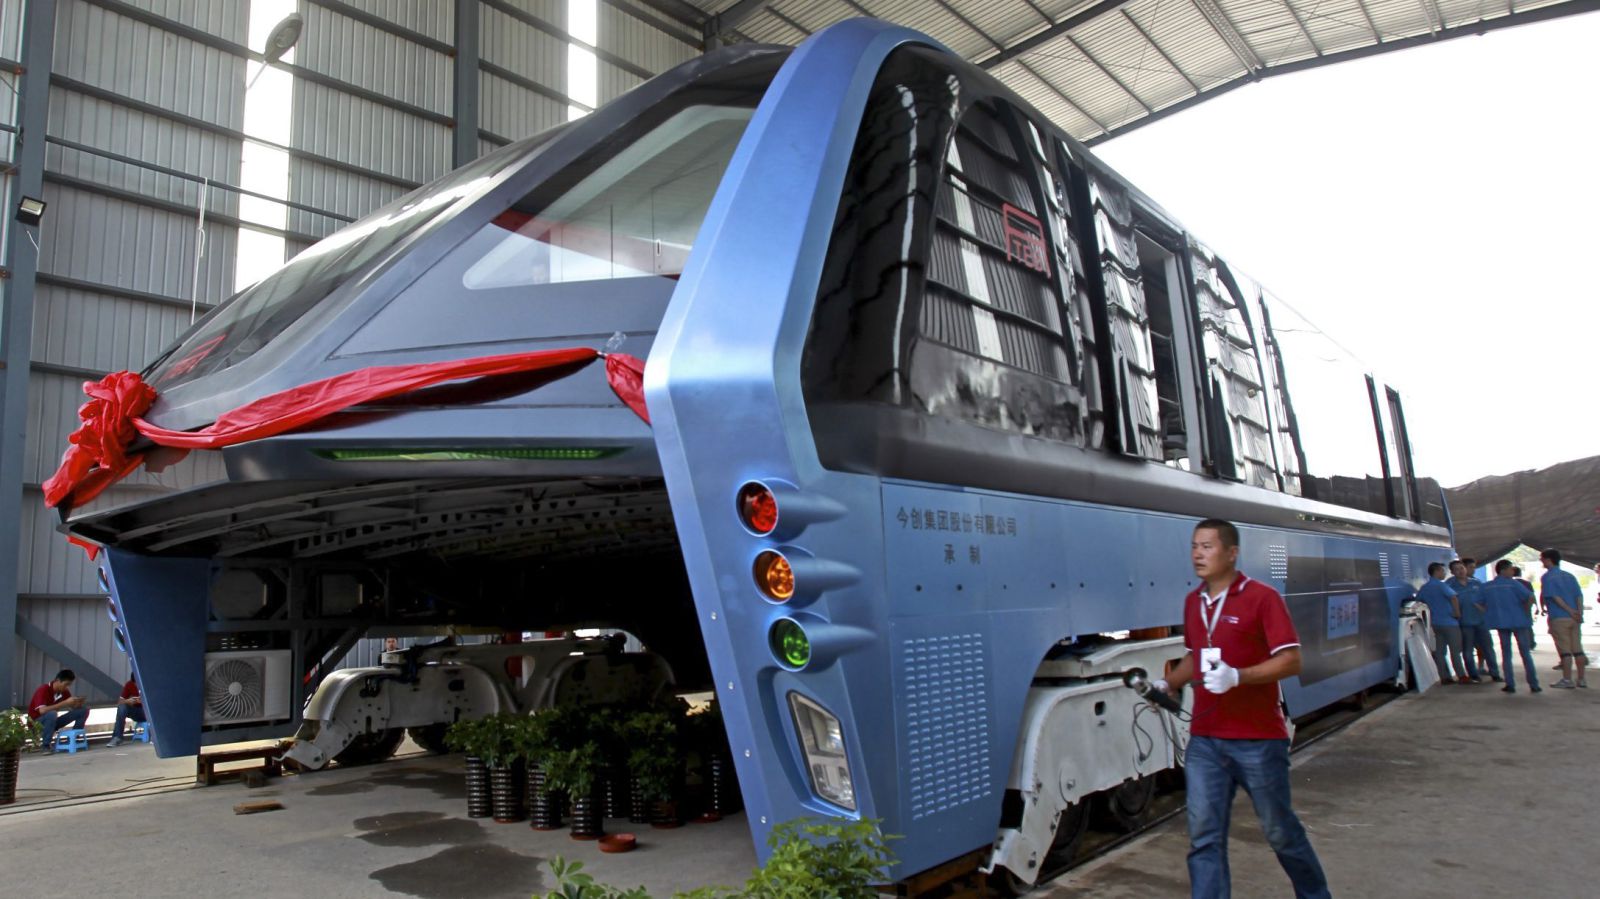 Проект двухэтажного рельсового автобуса из Китая оказался крупной финансовой аферой - 1